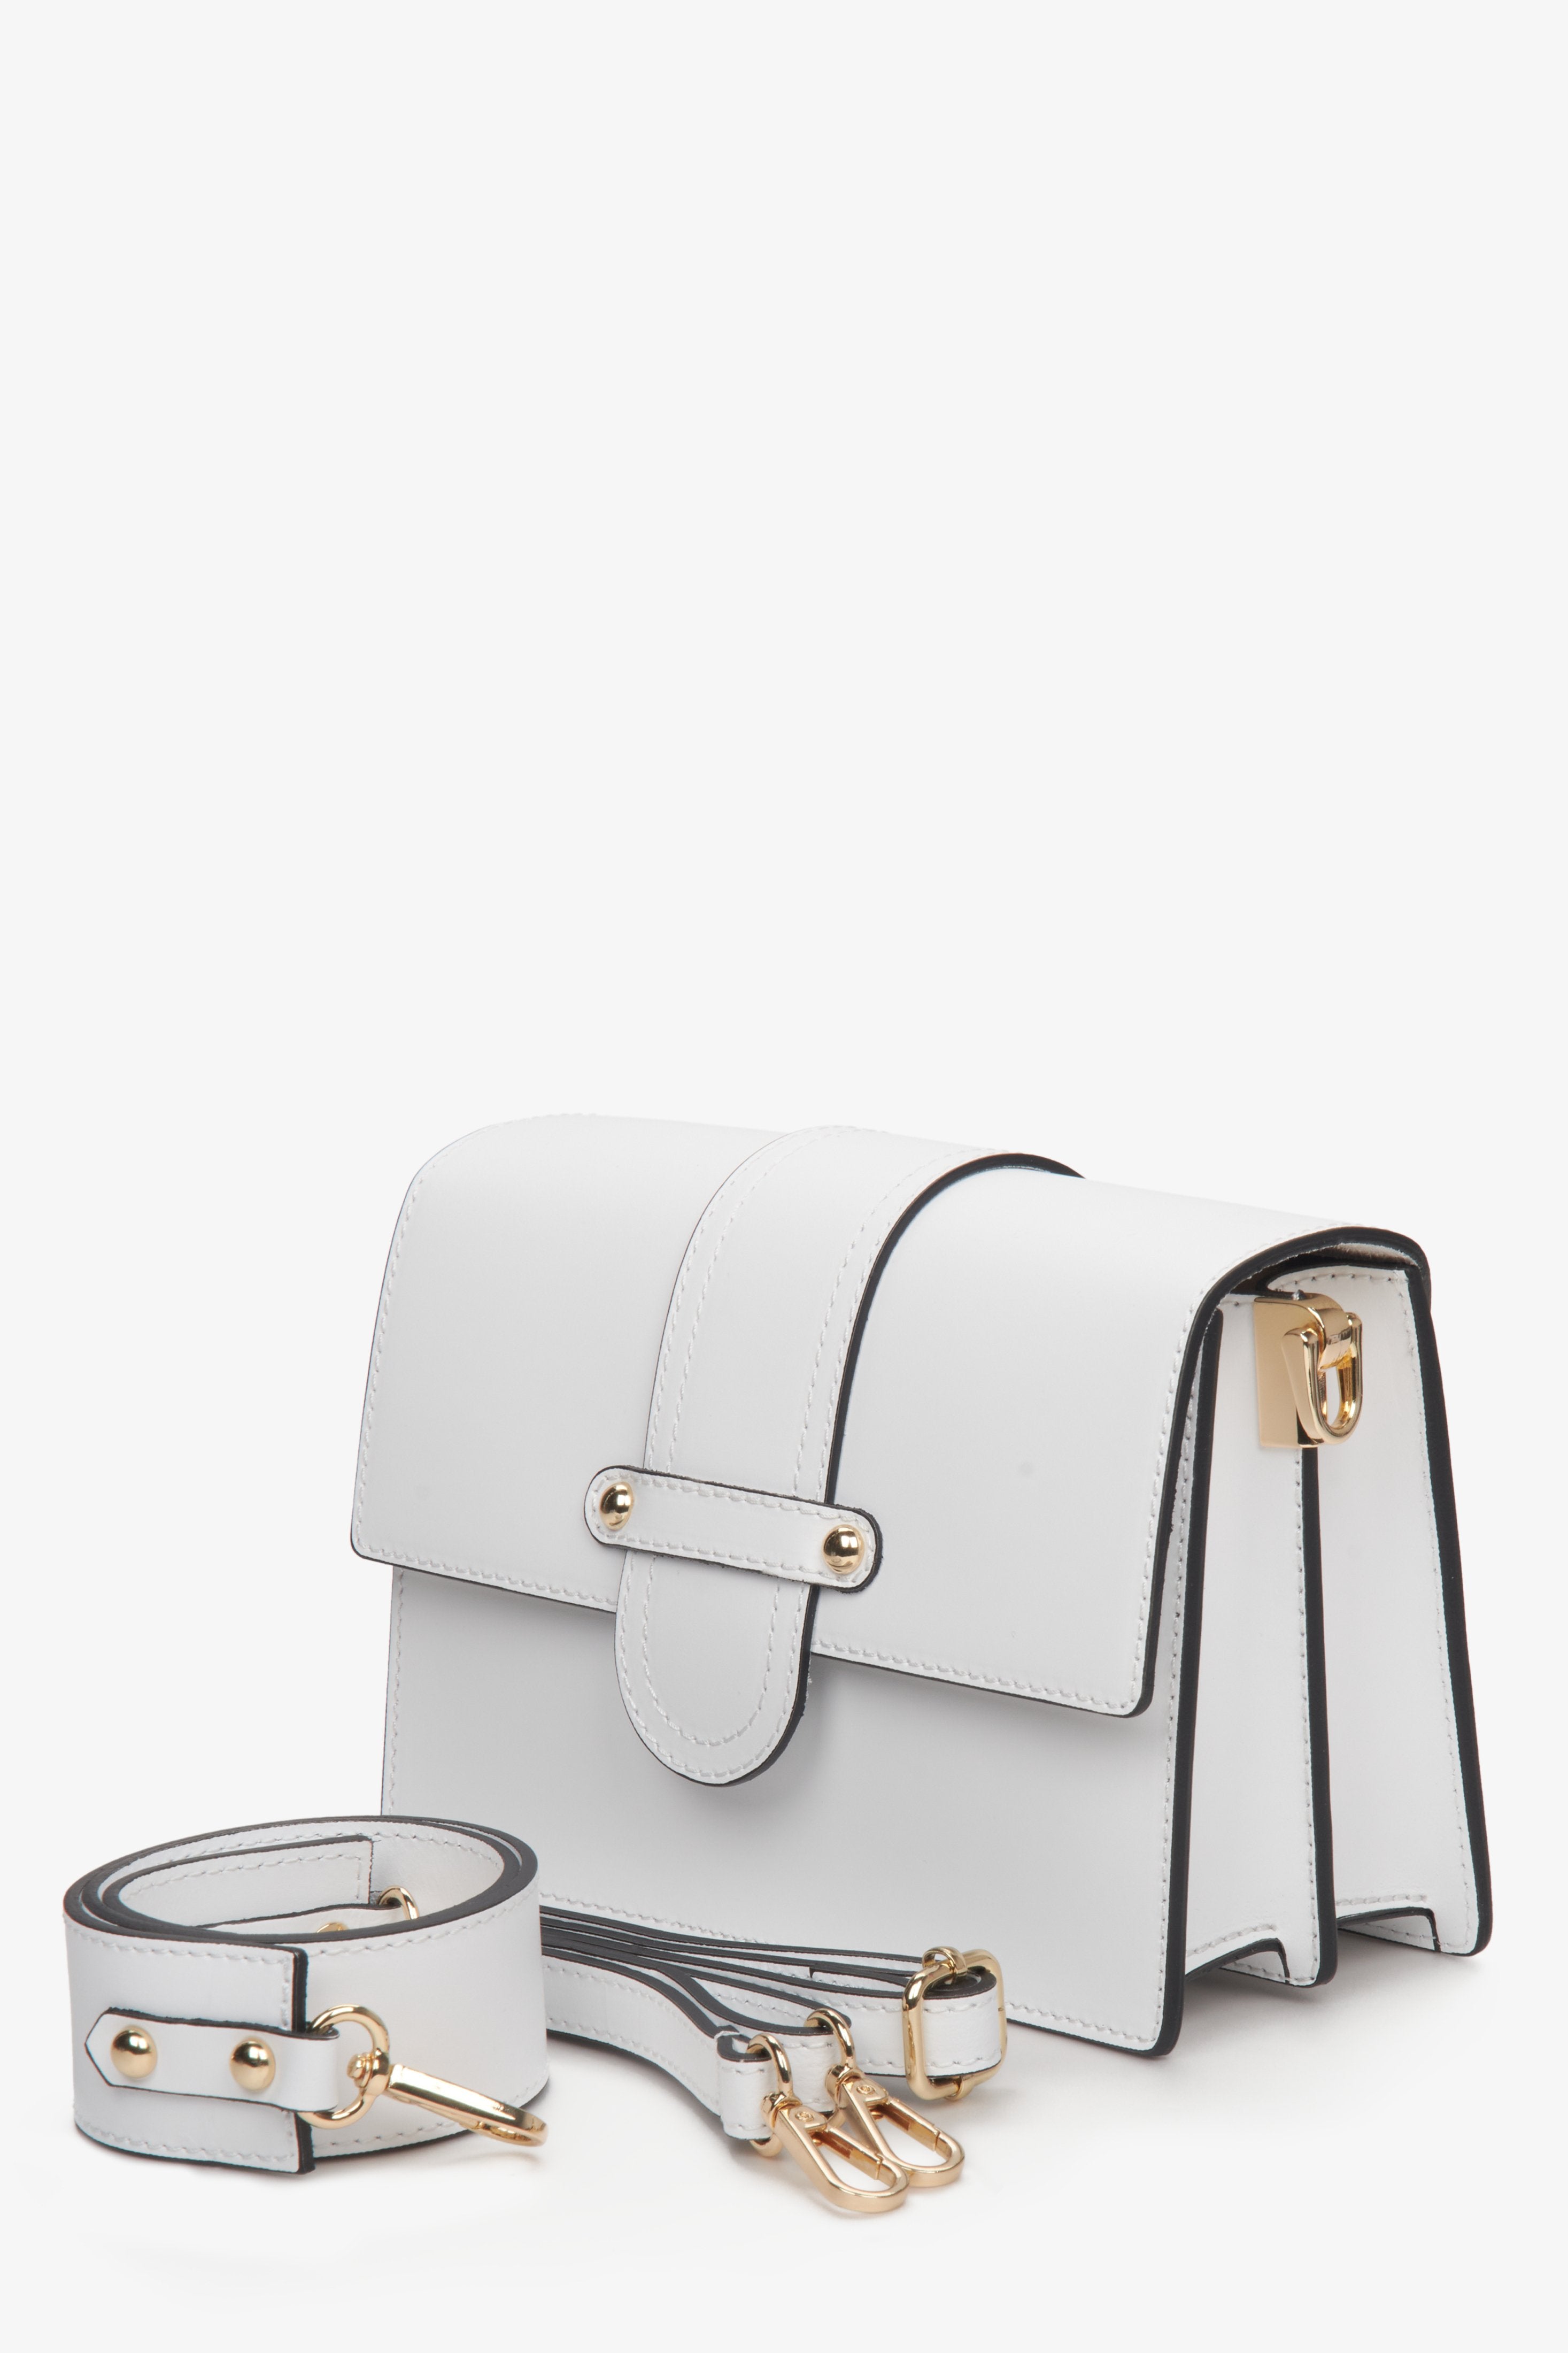 Biała, mała torebka damska ze skóry naturalnej włoskiem z zatrzaskiem na ramię i na pasku - prezentacja modelu z dodatkami.